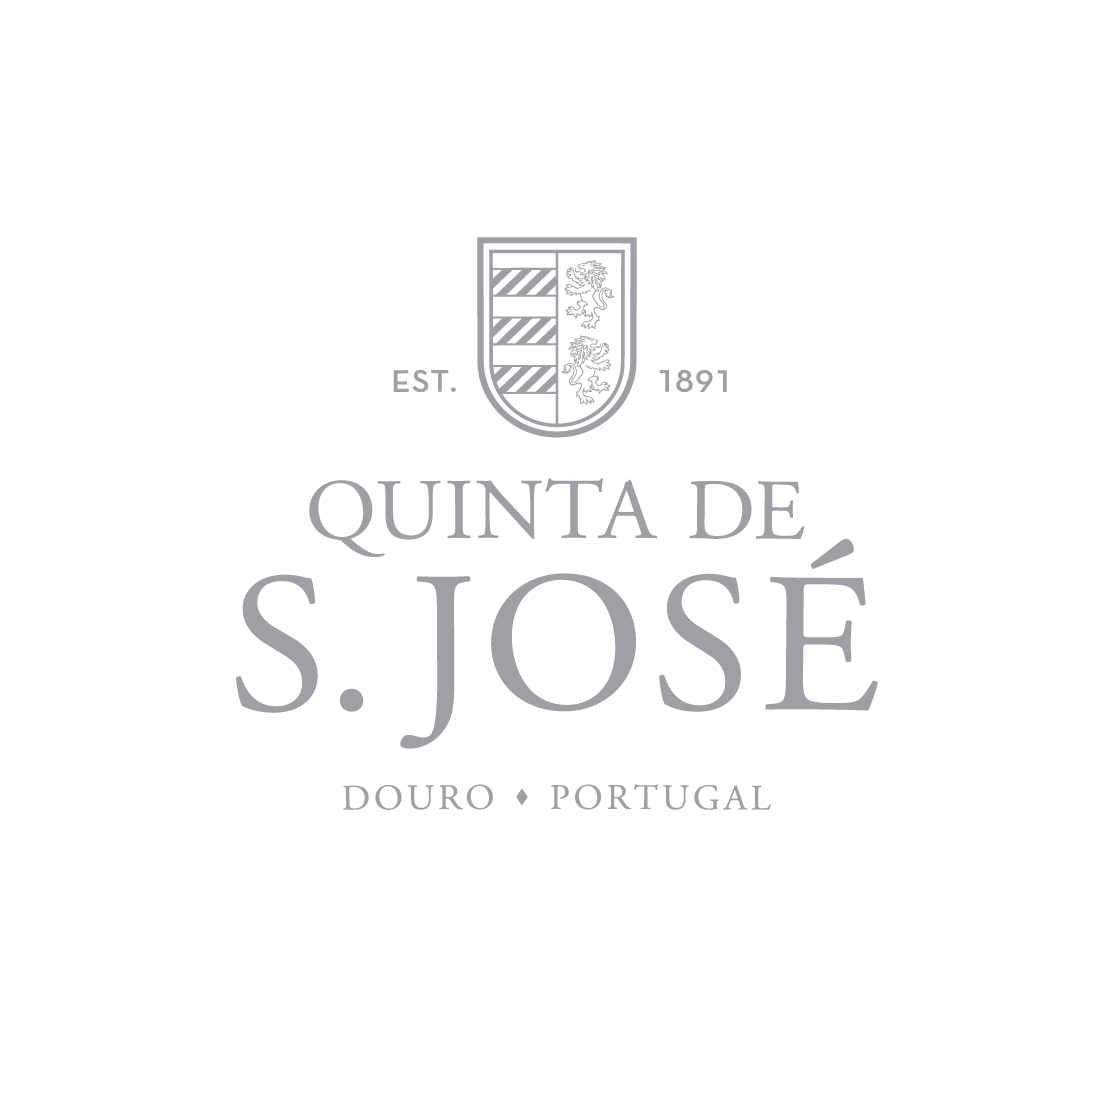 Quinta de S. José